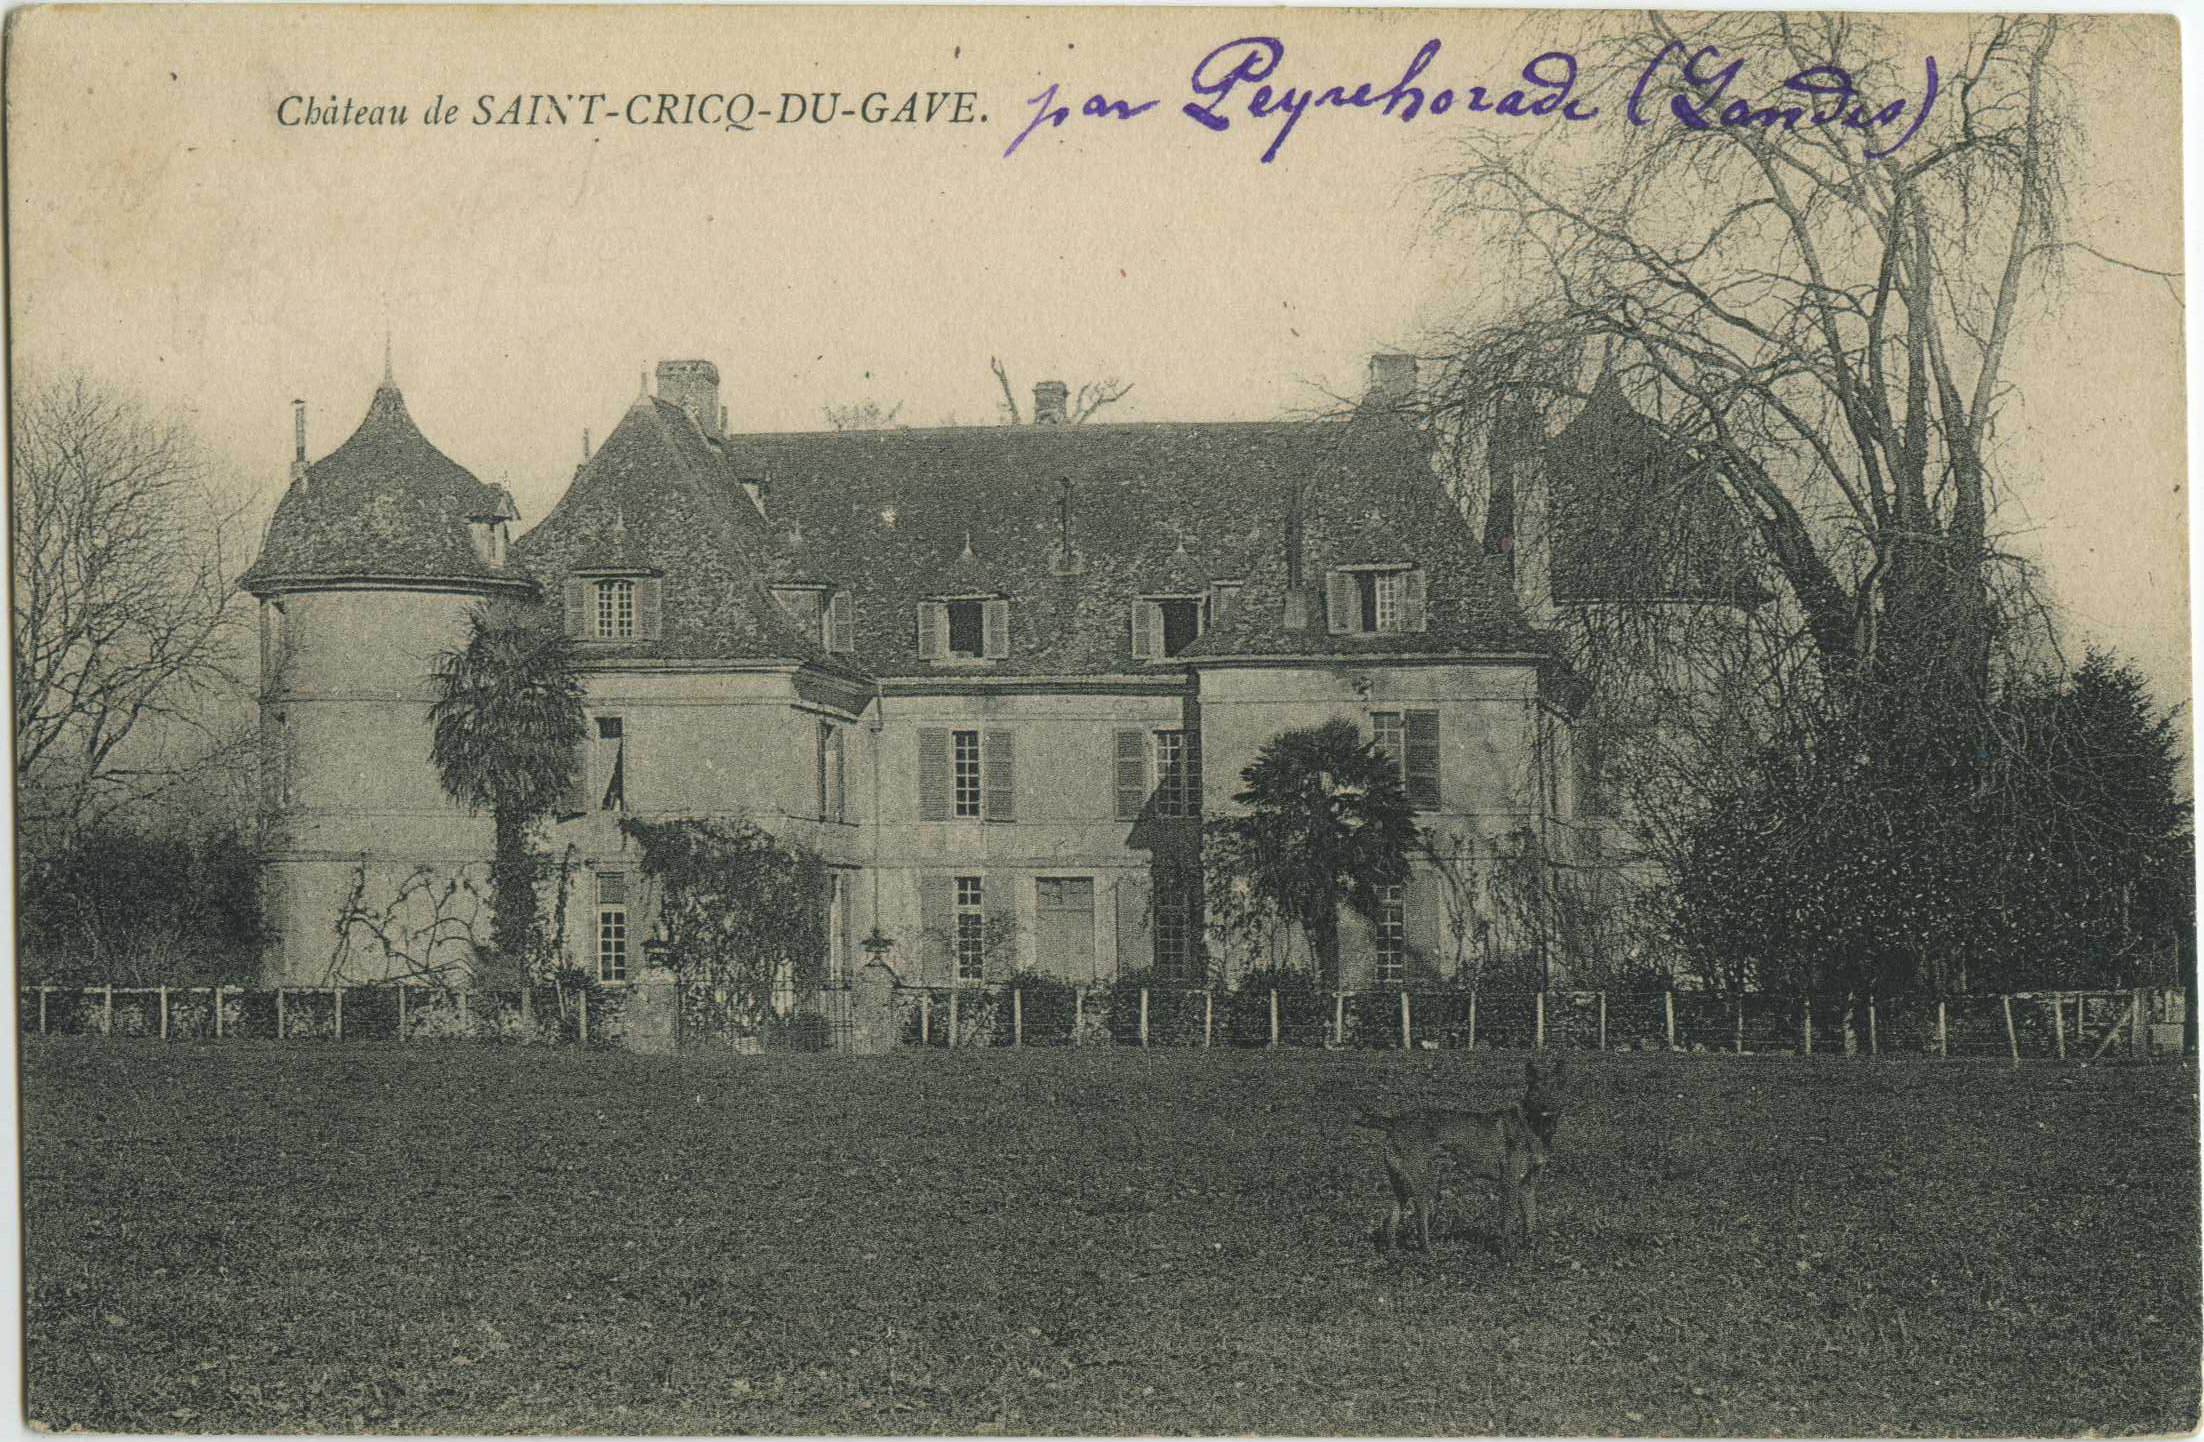 Saint-Cricq-du-Gave - Château de SAINT-CRICQ-DU-GAVE.